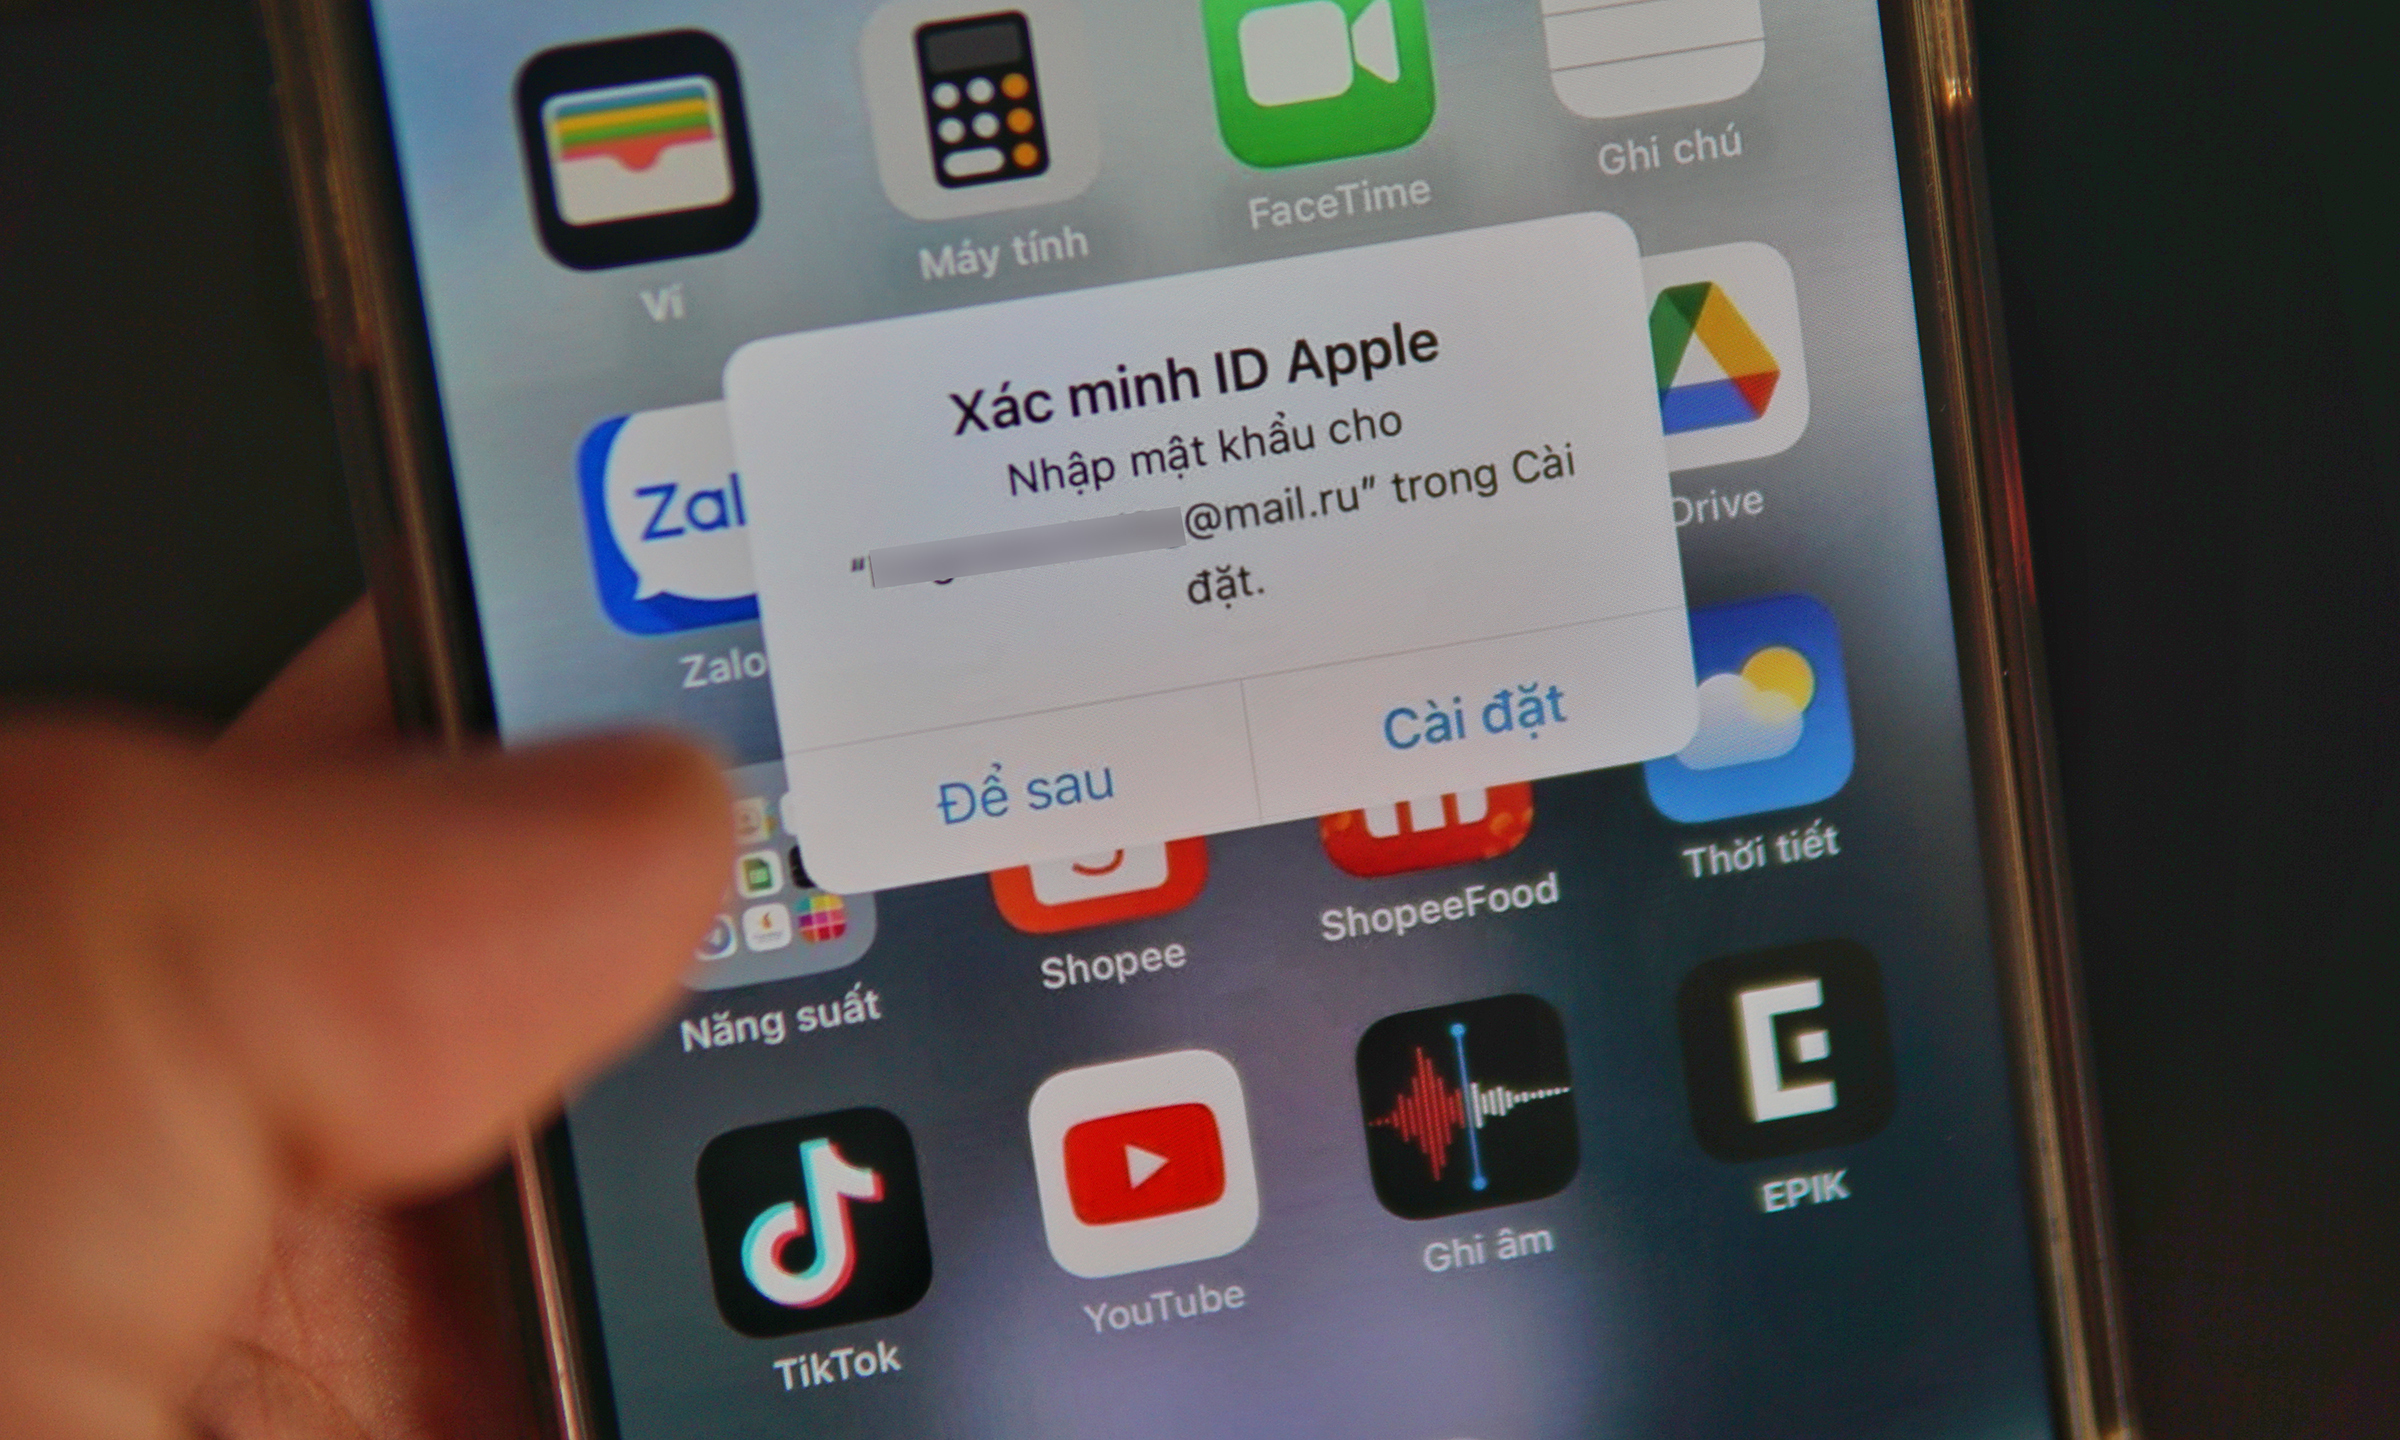 Thông báo Xác minh ID Apple đi kèm email lạ, xuất hiện trên iPhone của một người dùng. Ảnh: Lưu Quý